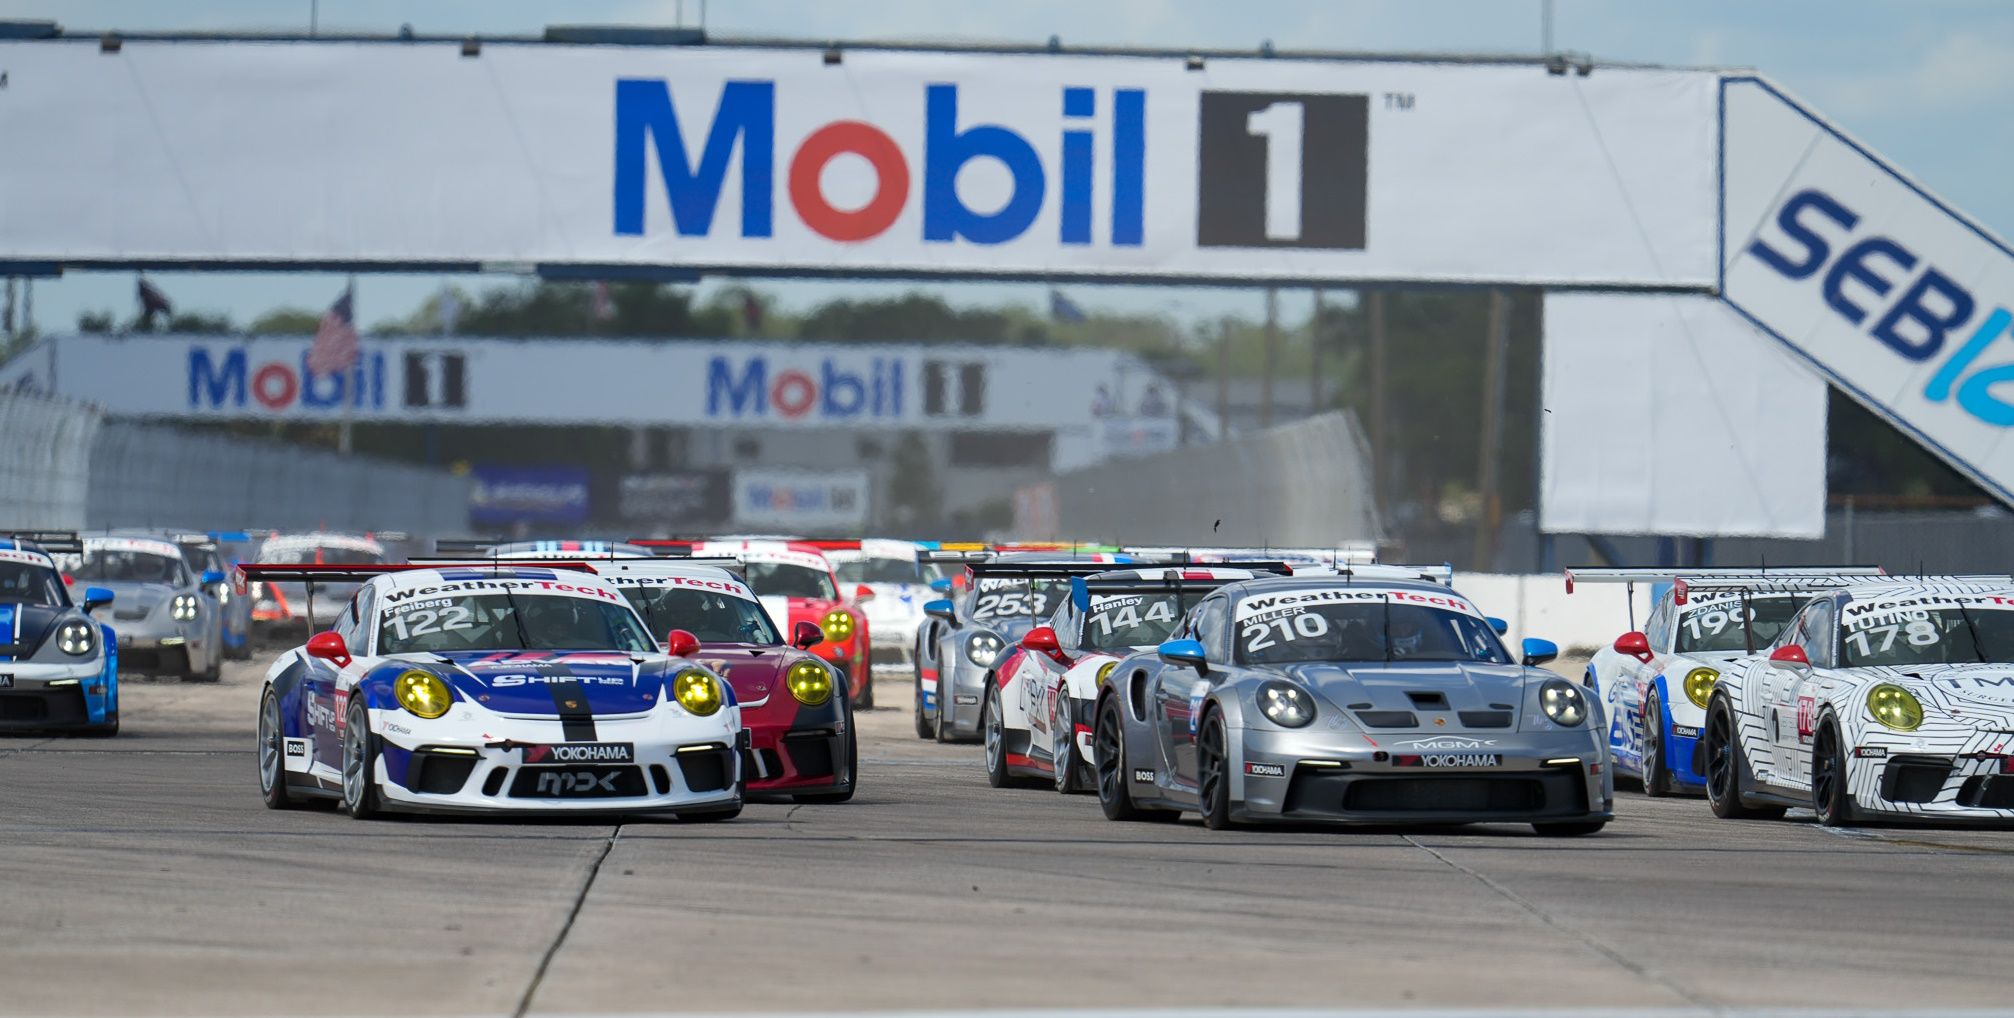 Llantas Yokohama suministra neumáticos para Porsche Sprint Challenge